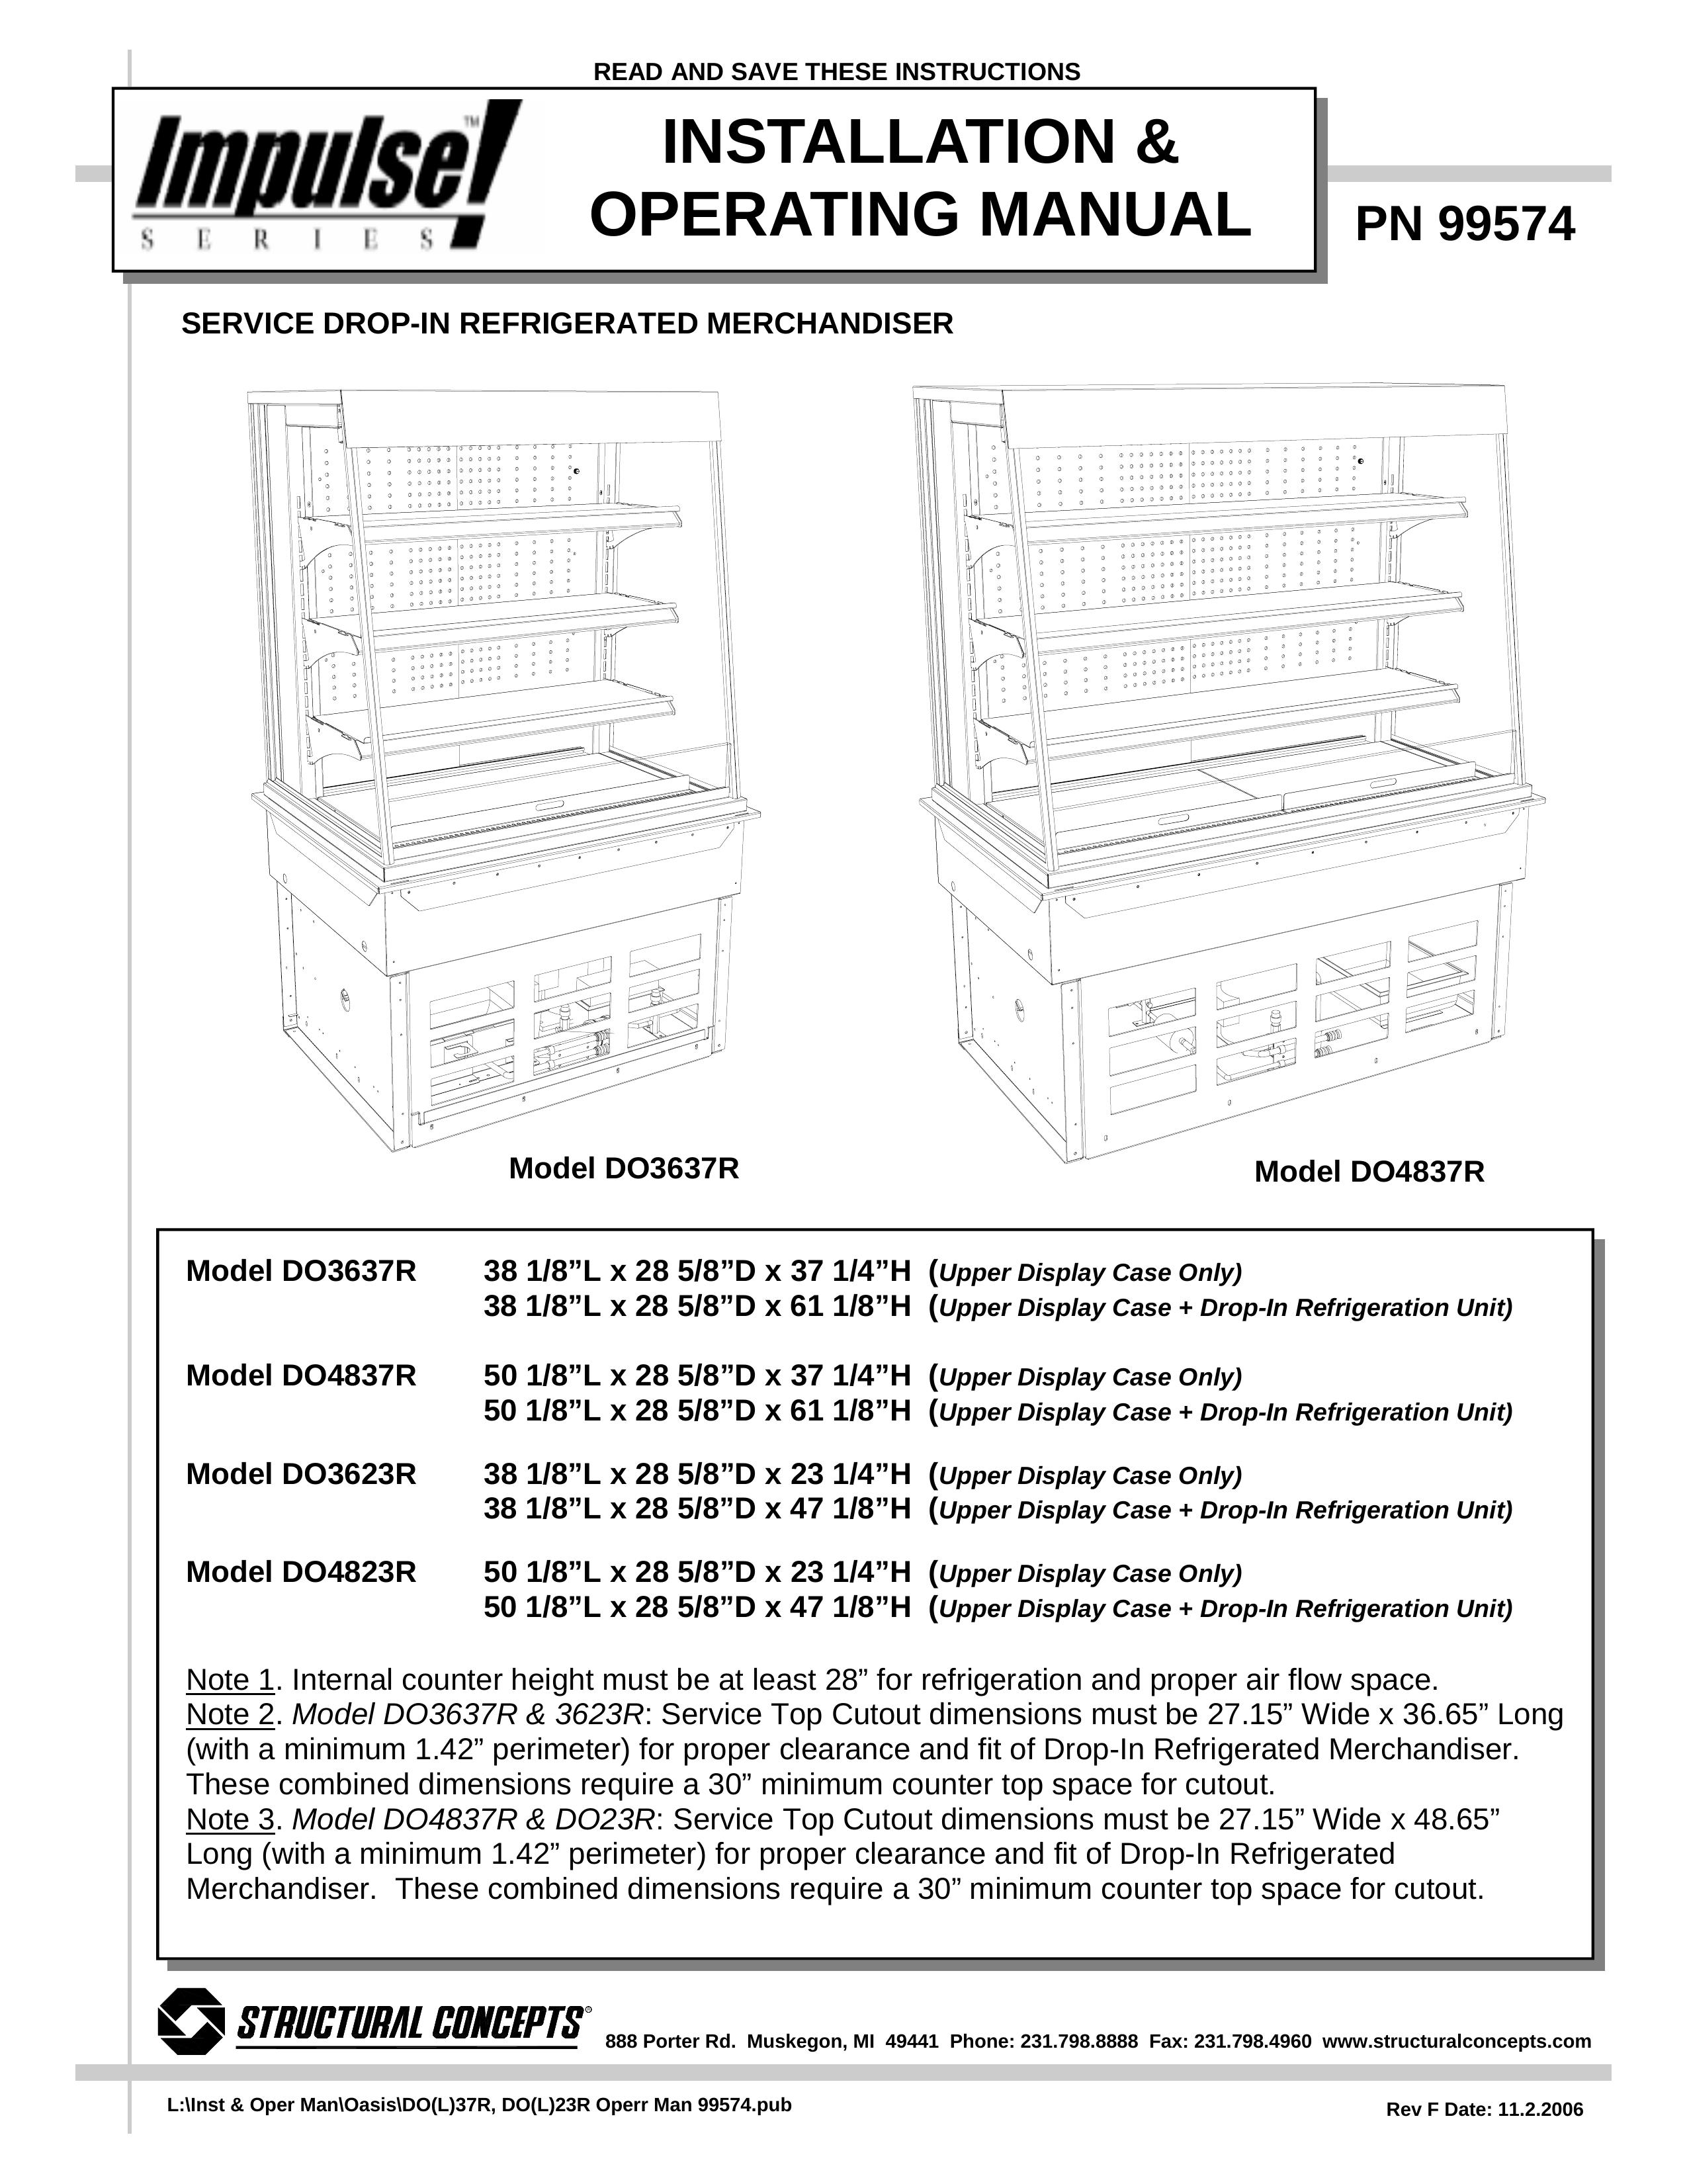 Impulse DO4837R Refrigerator User Manual